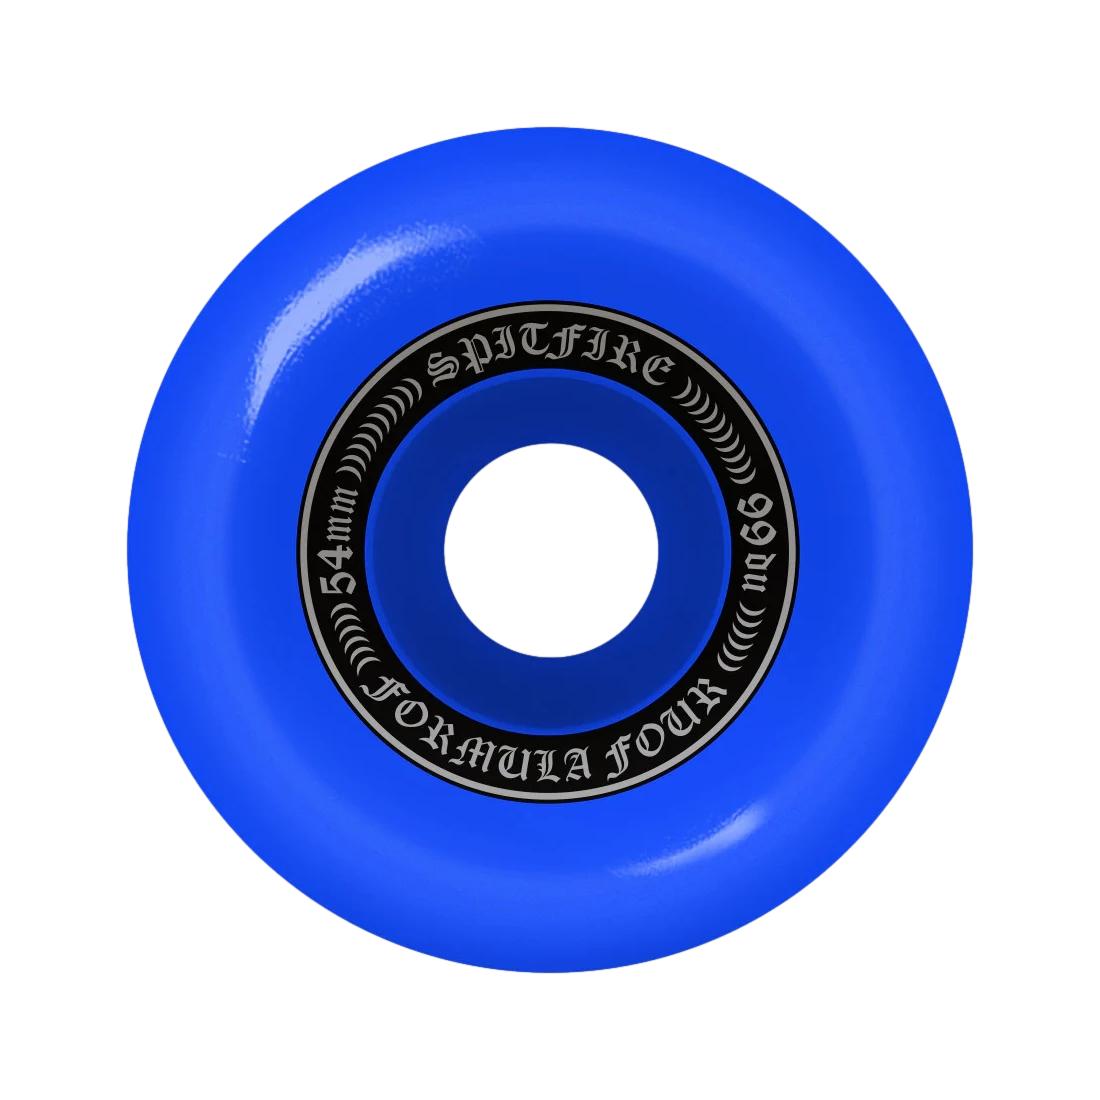 Spitfire F4 OG Classic Blue 54mm Wheels - Venue Skateboards